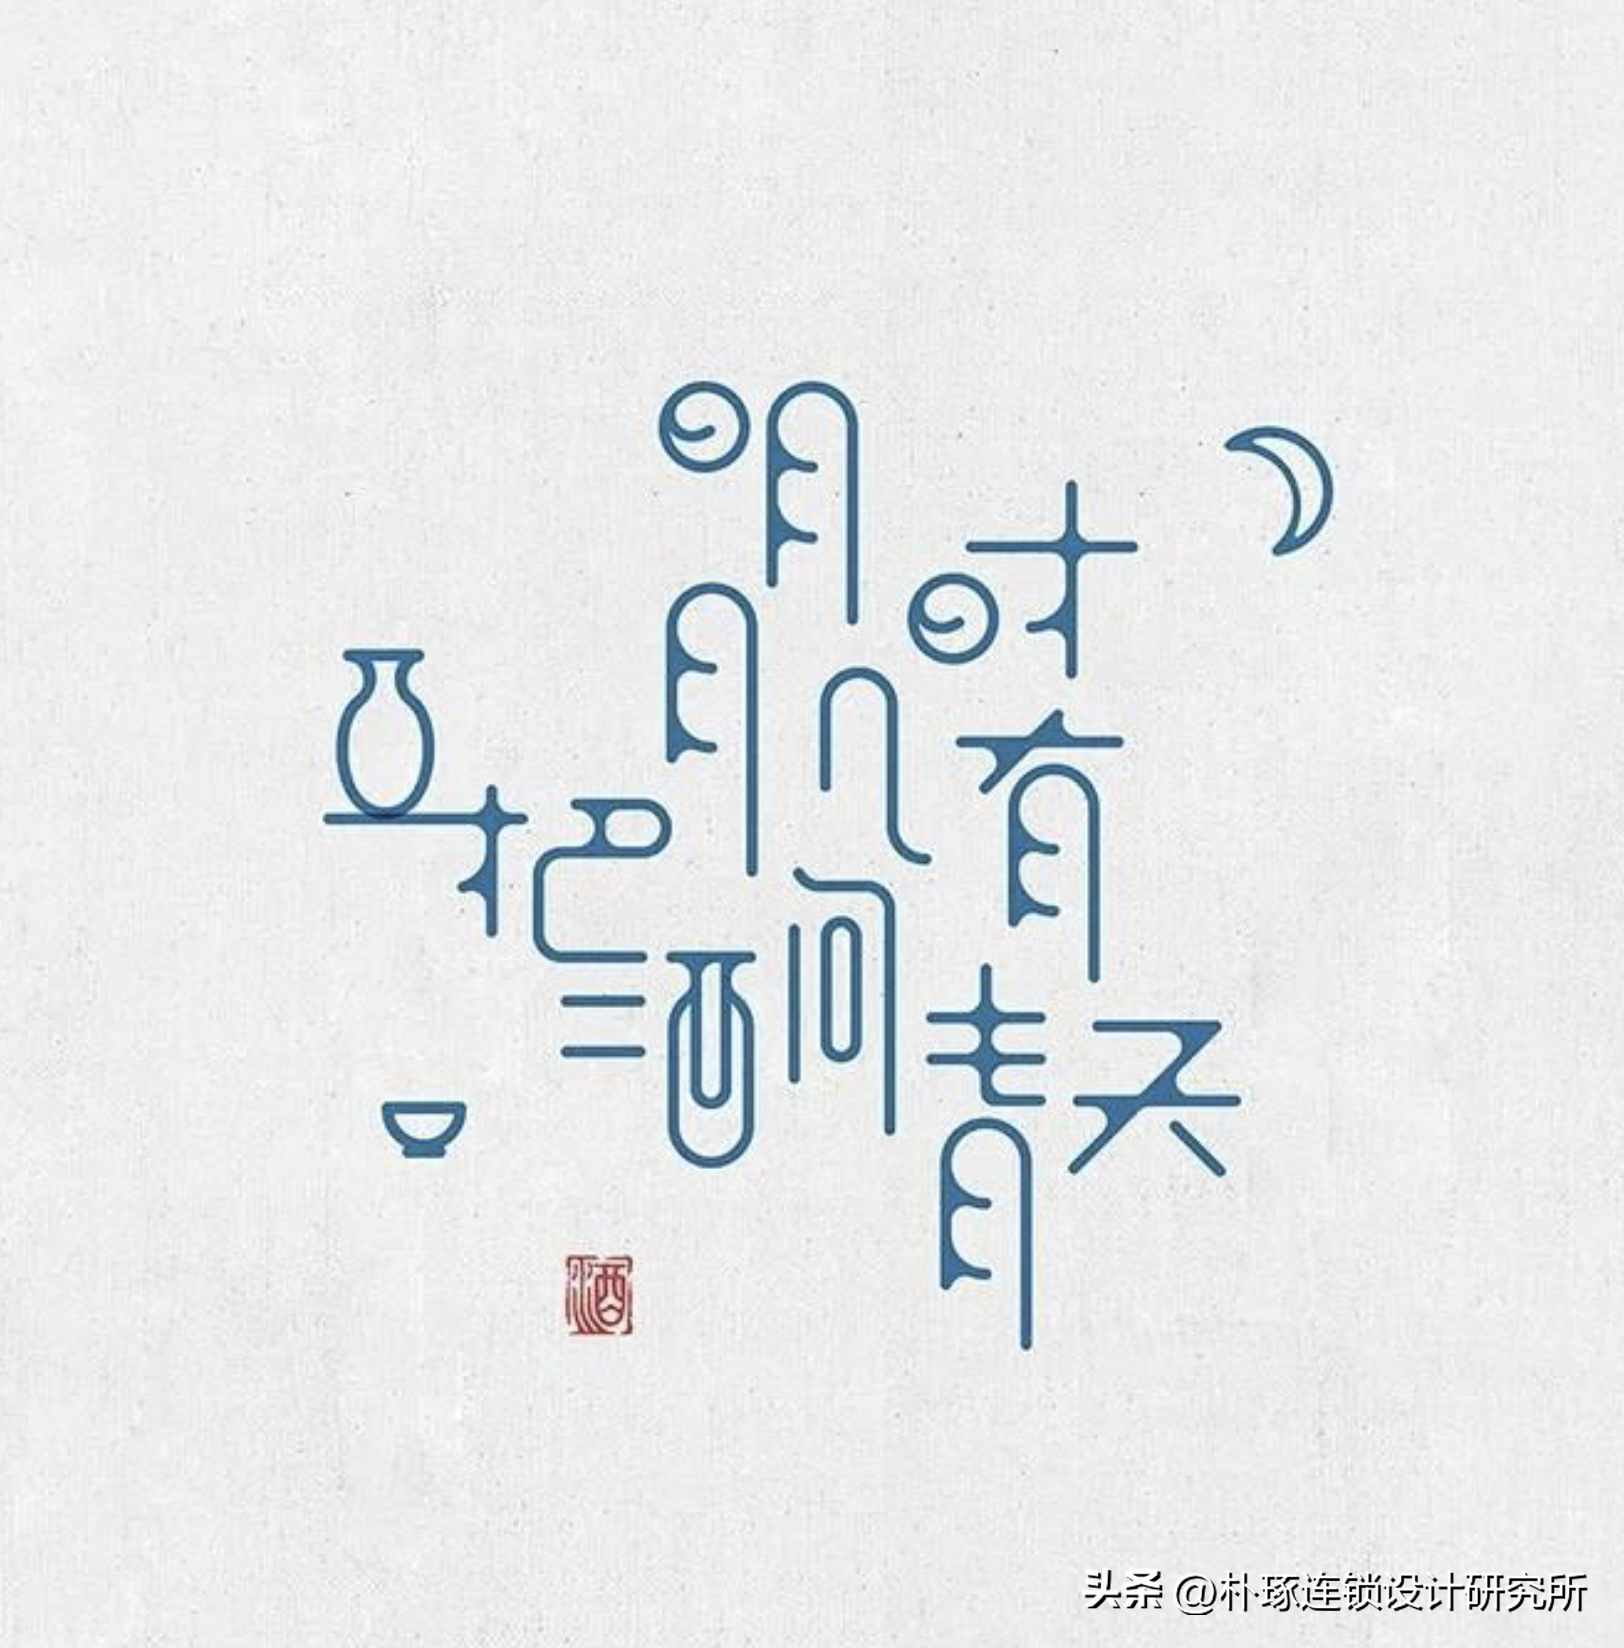 字中有画 中国汉字美学设计创意集锦